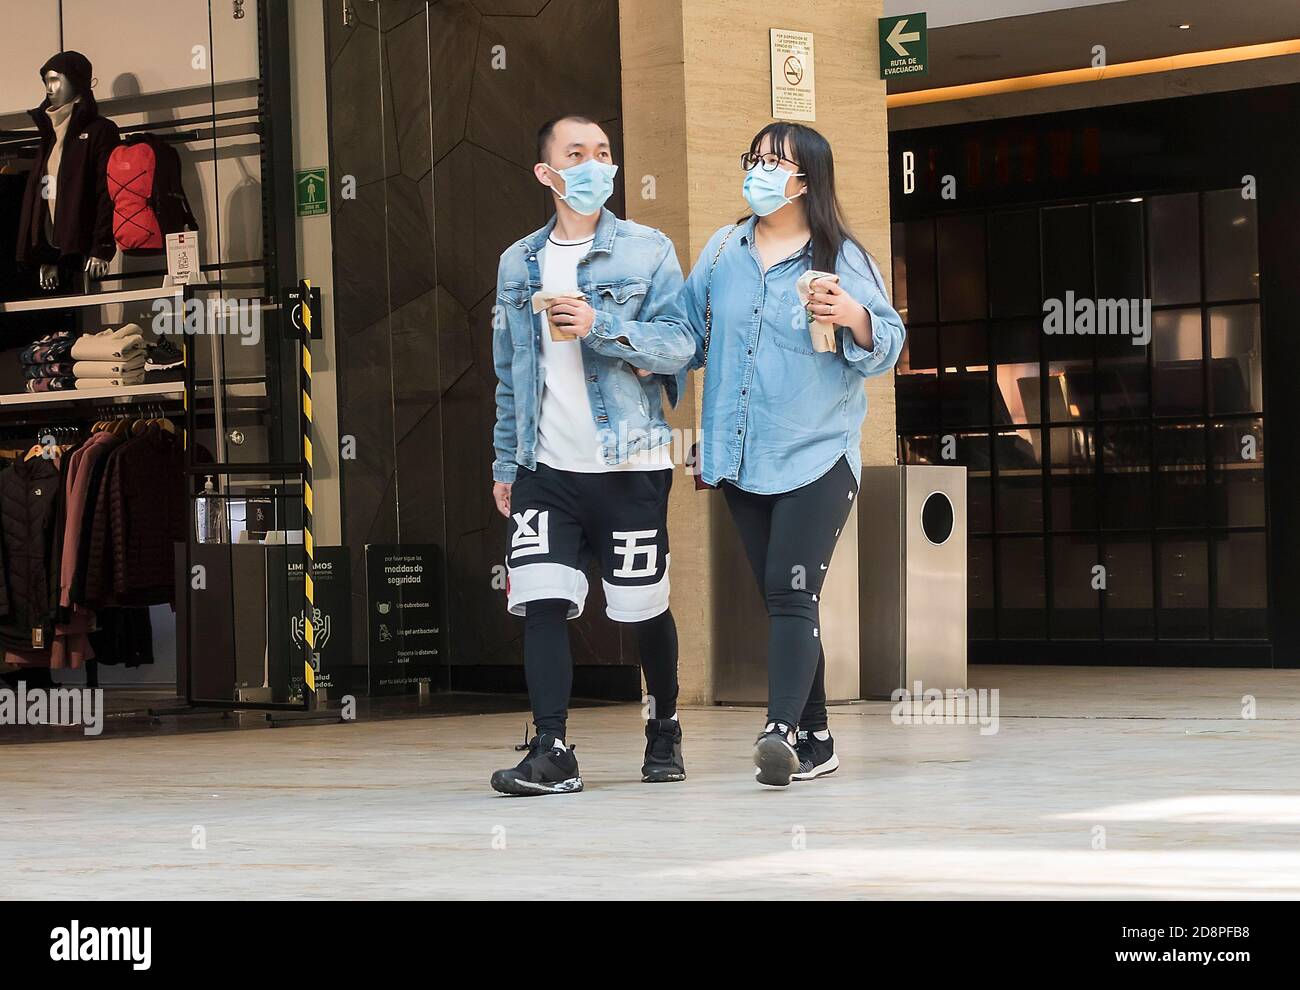 Dos personas en el centro comercial Antara, Ciudad de México, México, con máscaras durante la pandemia de Covid-19 Foto de stock